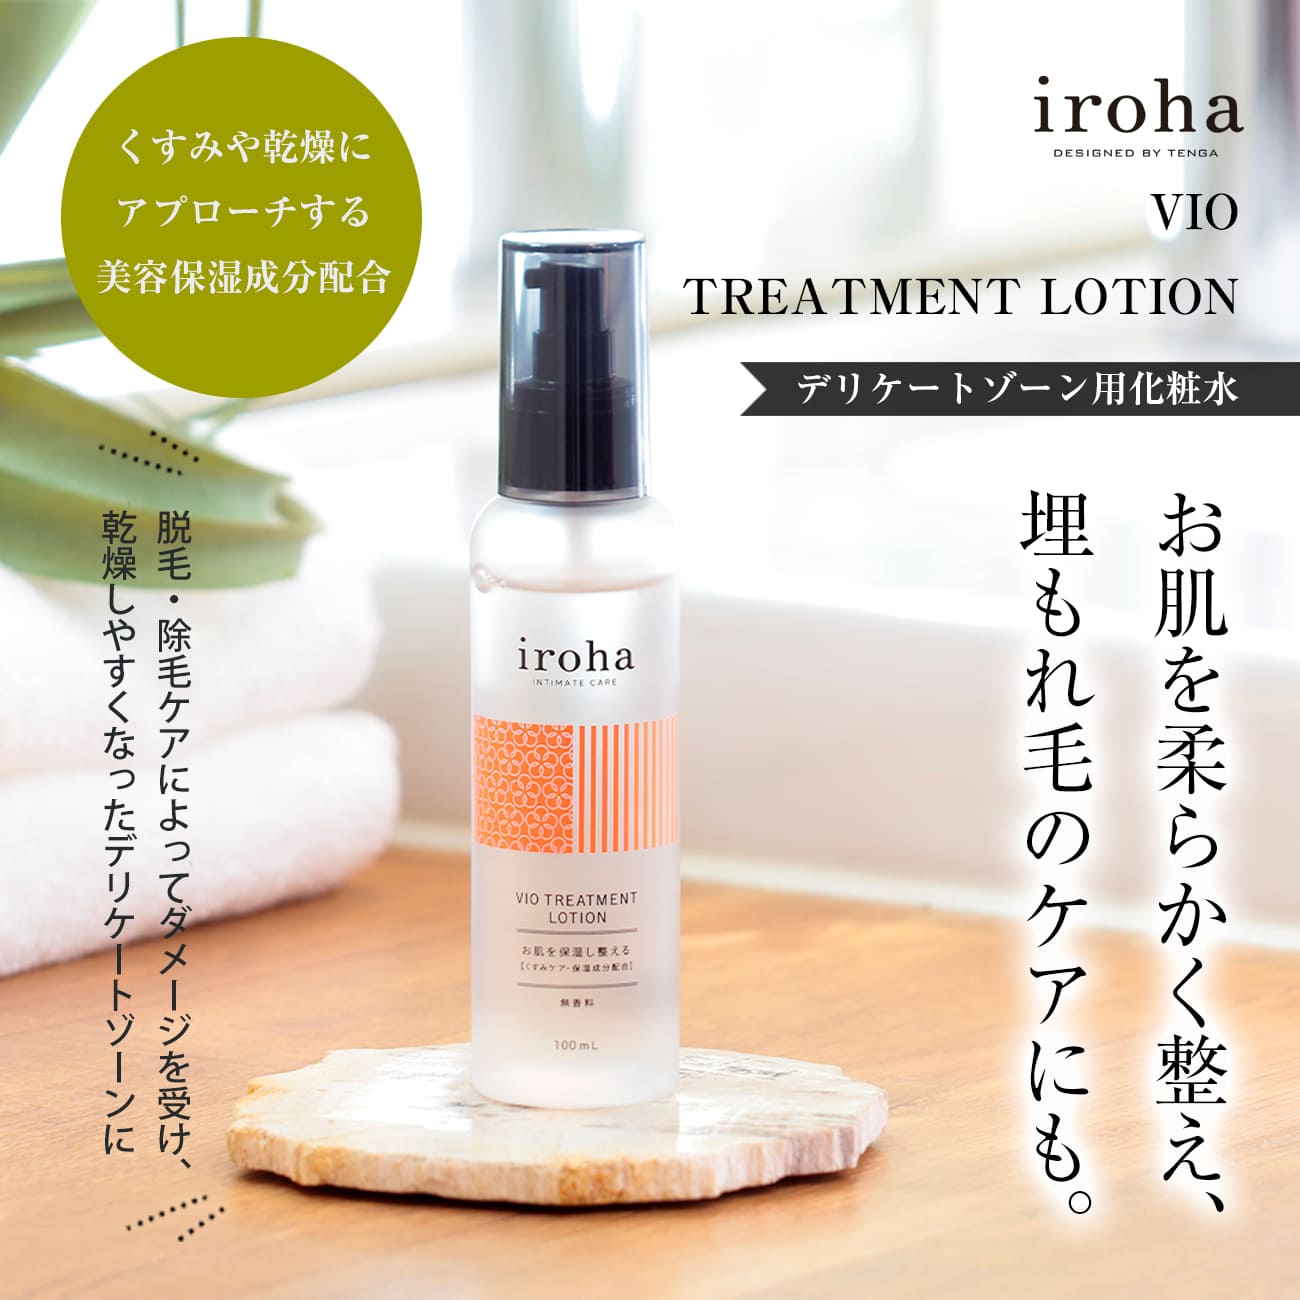 iroha デリケートゾーン用化粧水 - ボディローション